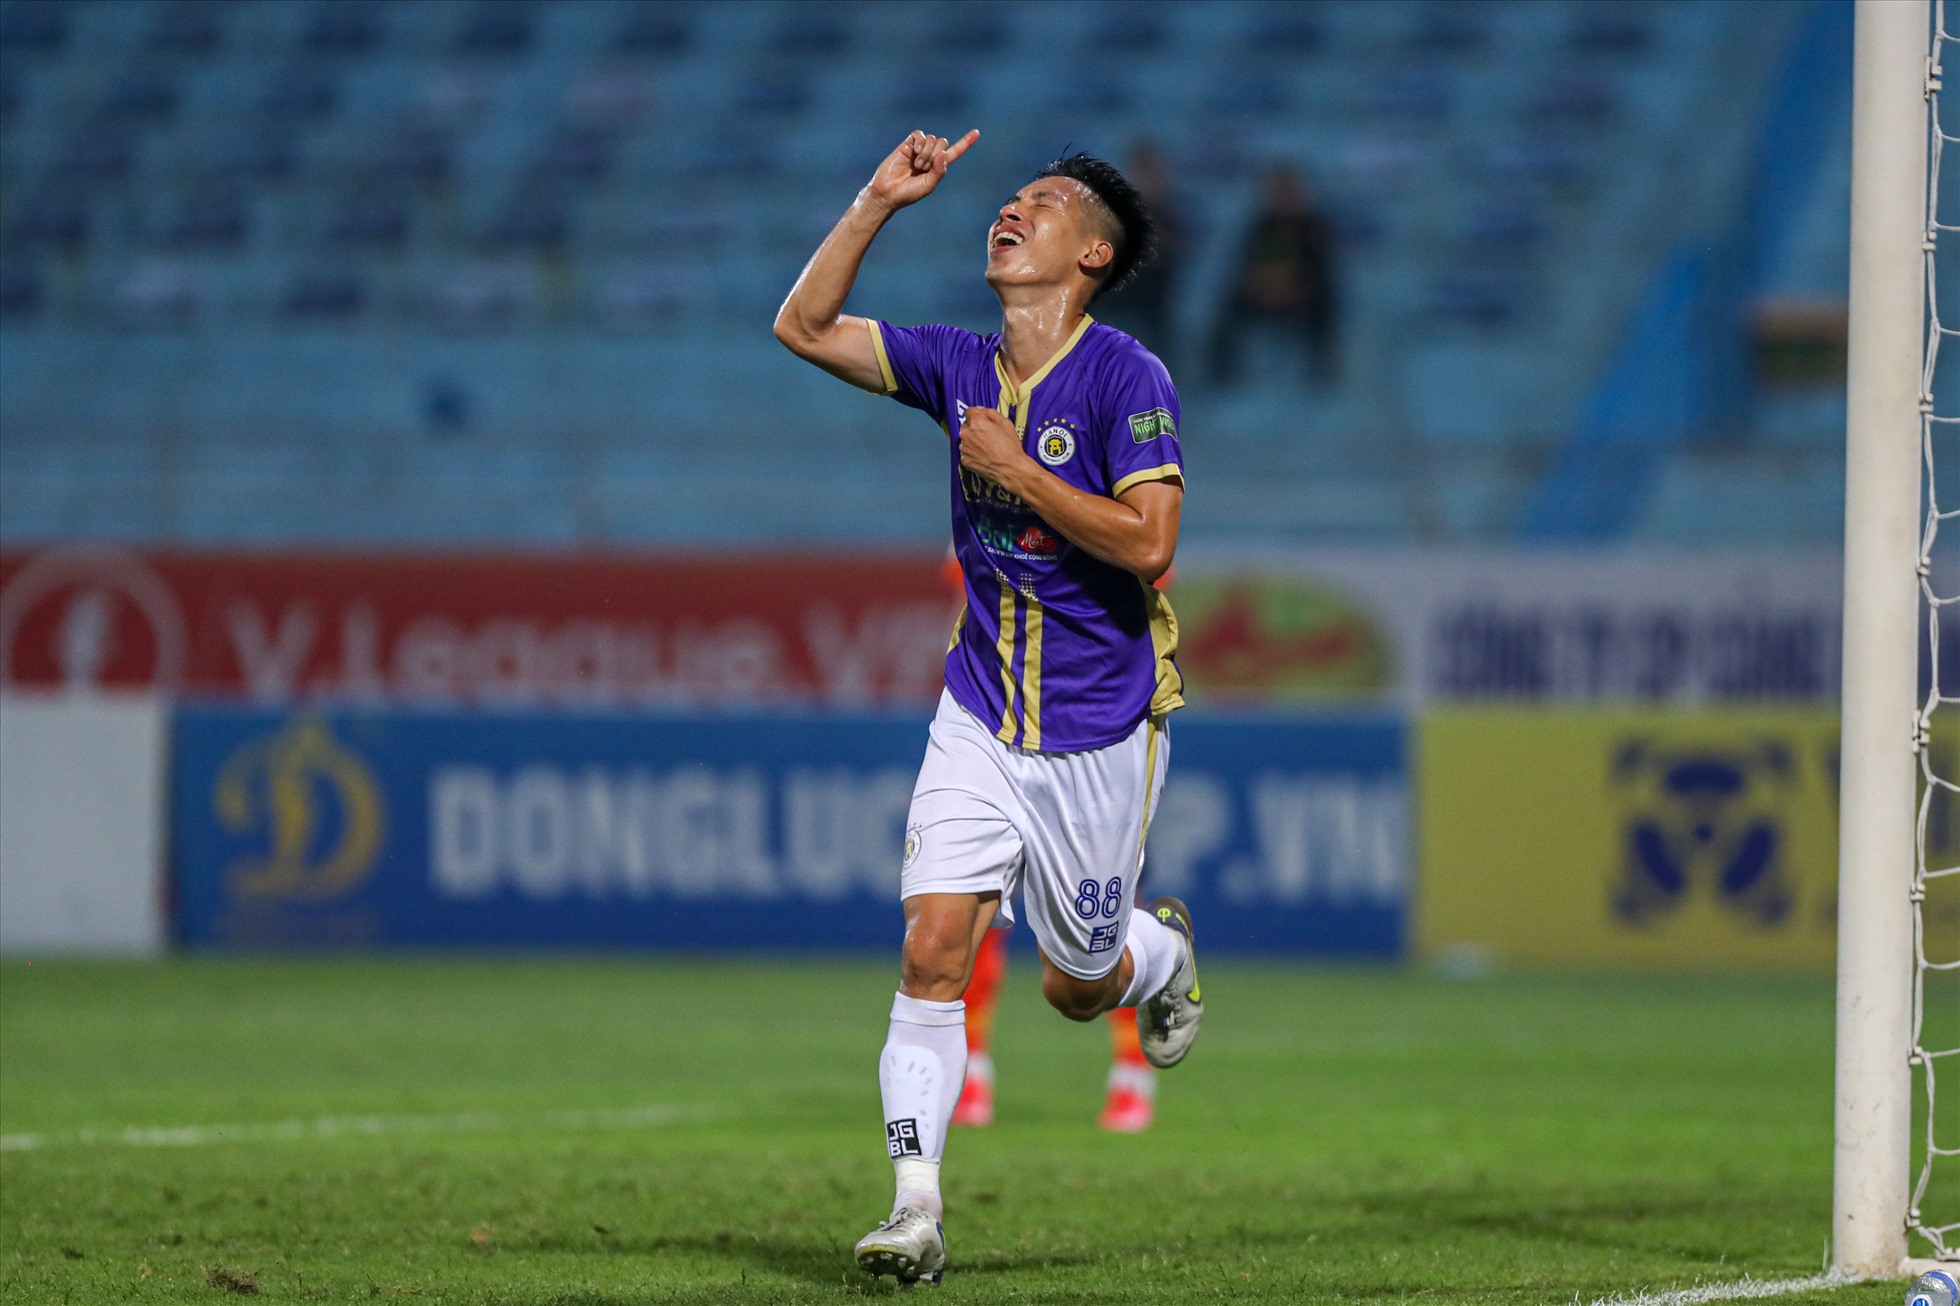 Phút 72, tiền vệ Đỗ Hùng Dũng thoát xuống lốc bóng qua đầu thủ thành Phan Văn Biểu nhân đôi cách biệt cho câu lạc bộ Hà Nội.